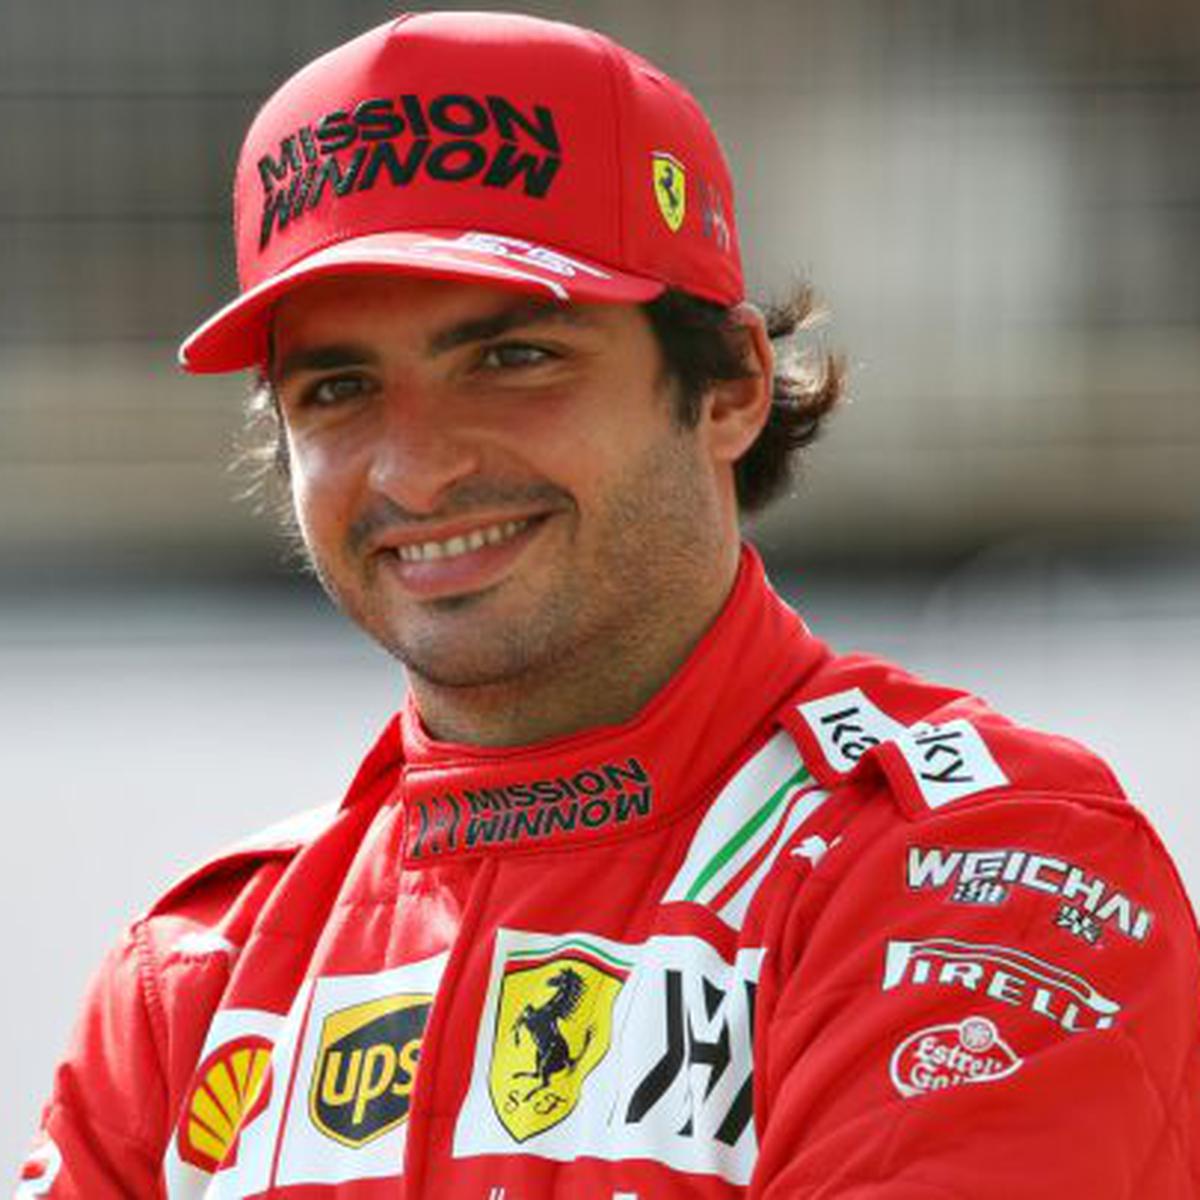 Carlos Sainz sumó su noveno podio en la F1, séptimo con Ferrari